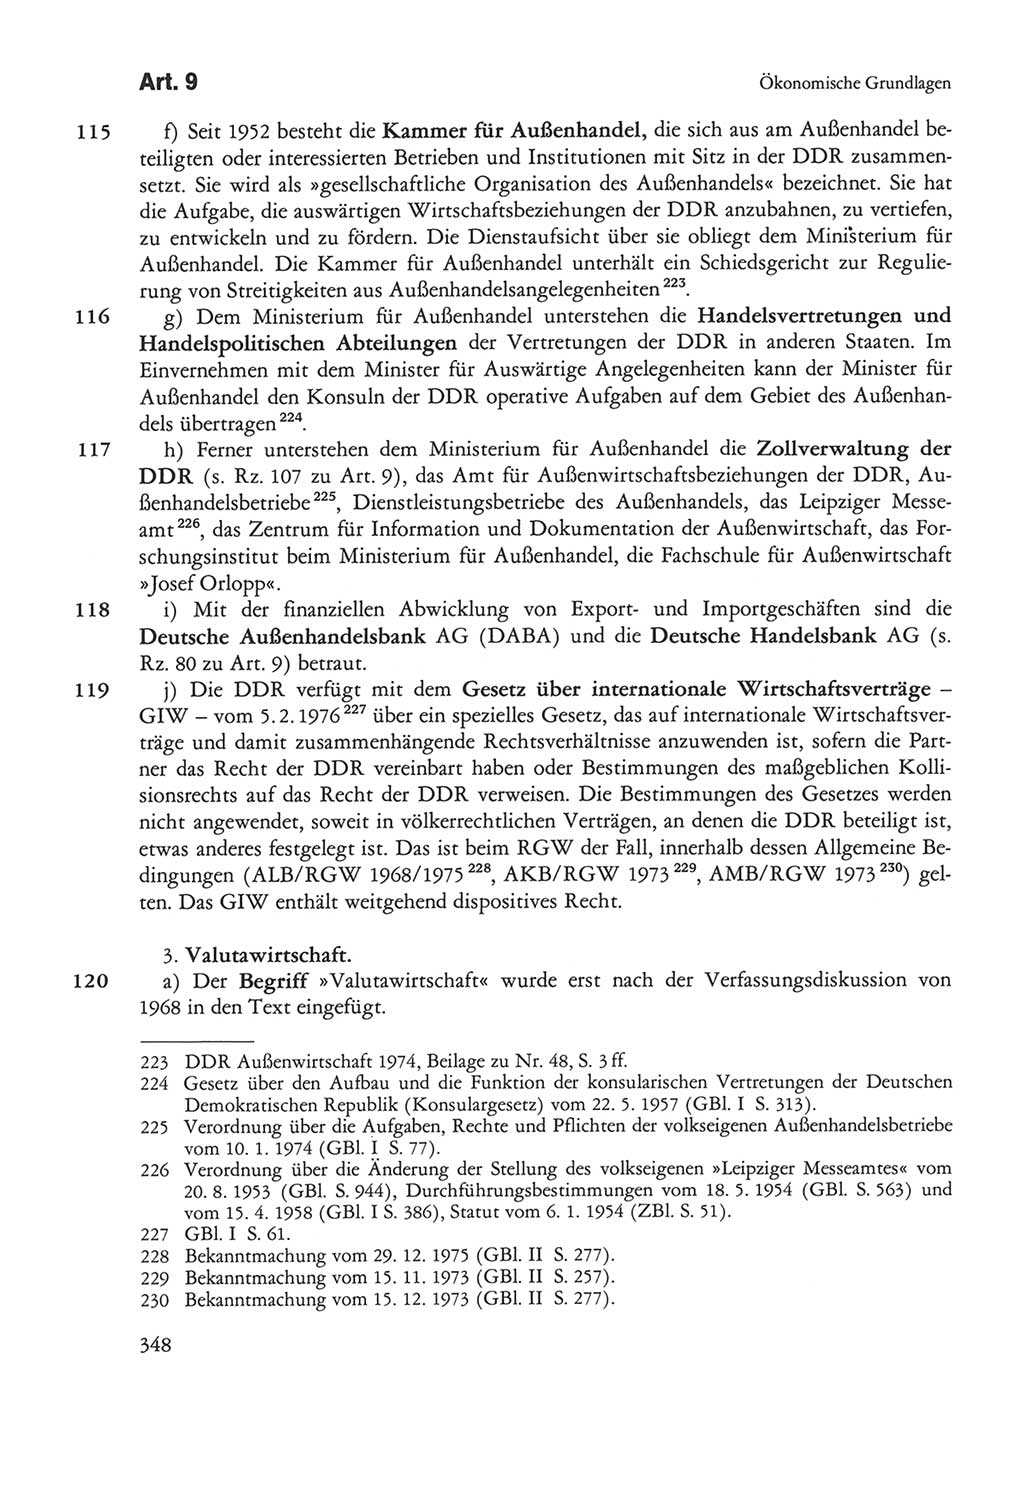 Die sozialistische Verfassung der Deutschen Demokratischen Republik (DDR), Kommentar mit einem Nachtrag 1997, Seite 348 (Soz. Verf. DDR Komm. Nachtr. 1997, S. 348)